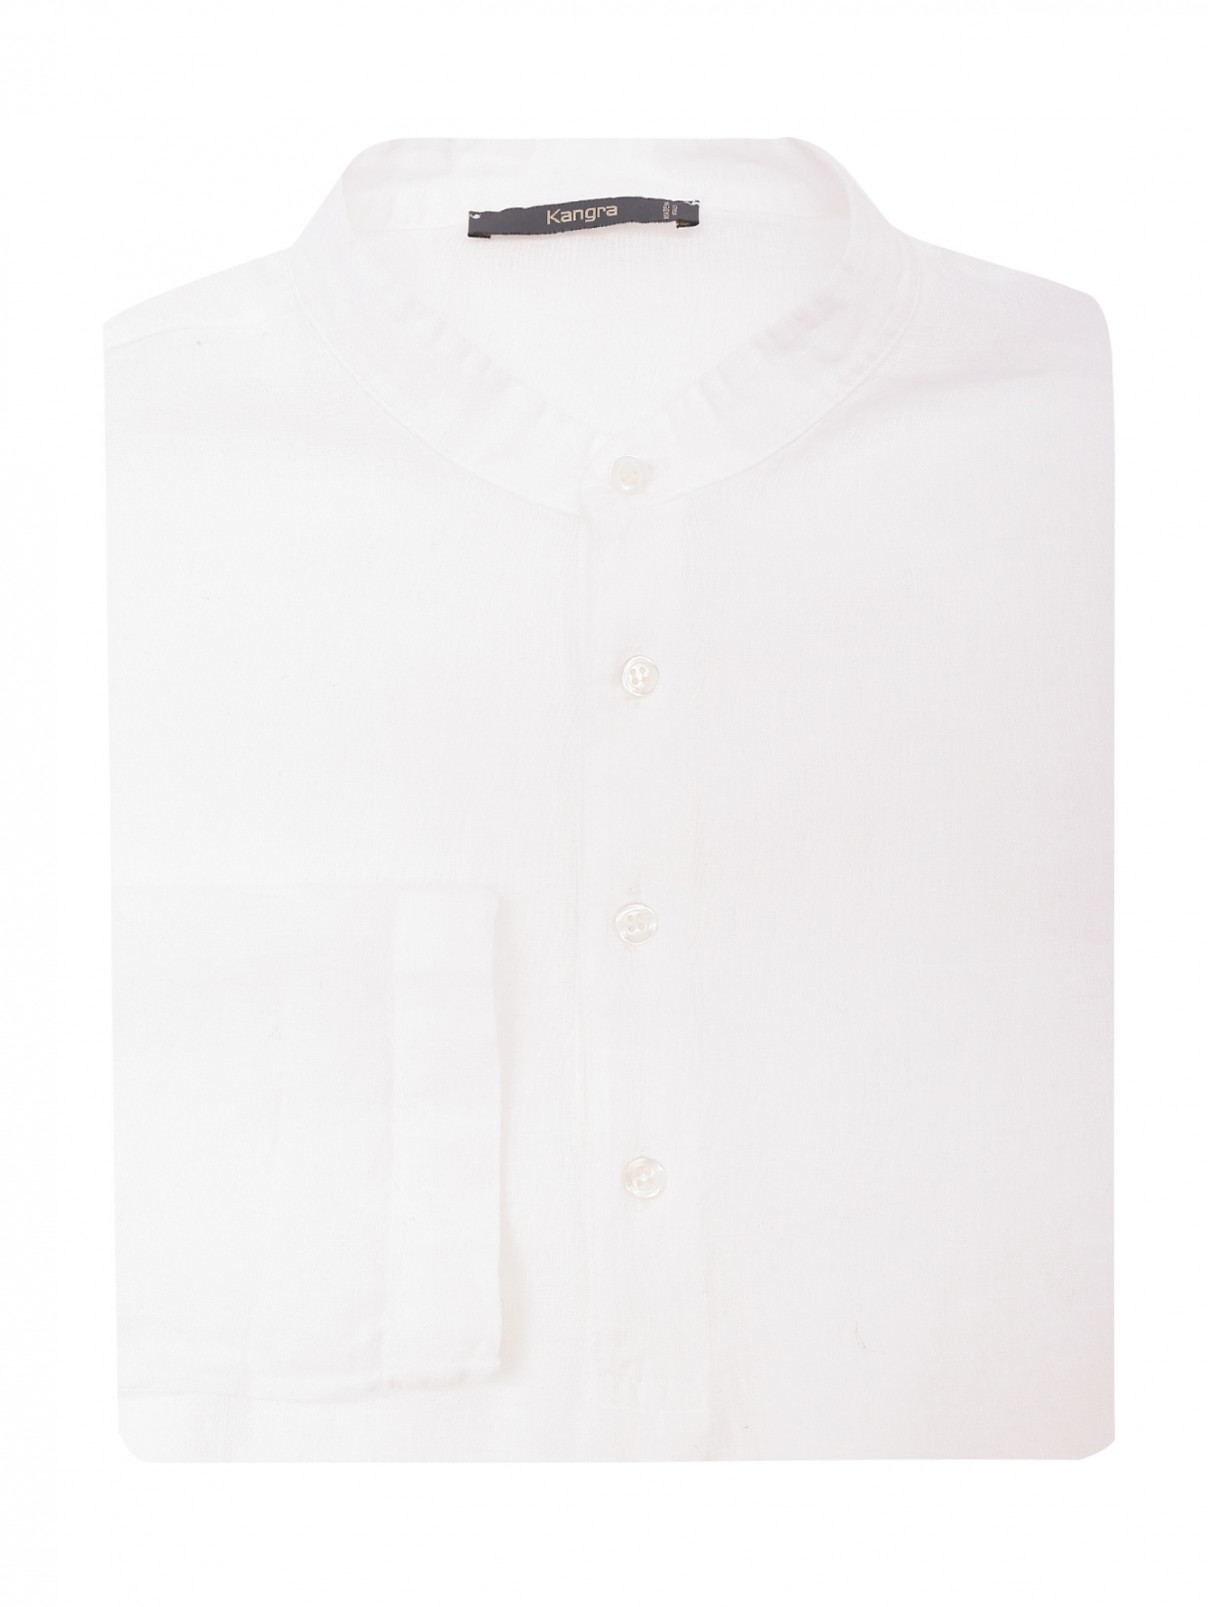 Рубашка изо льна свободного кроя Kangra Cashmere  –  Общий вид  – Цвет:  Белый